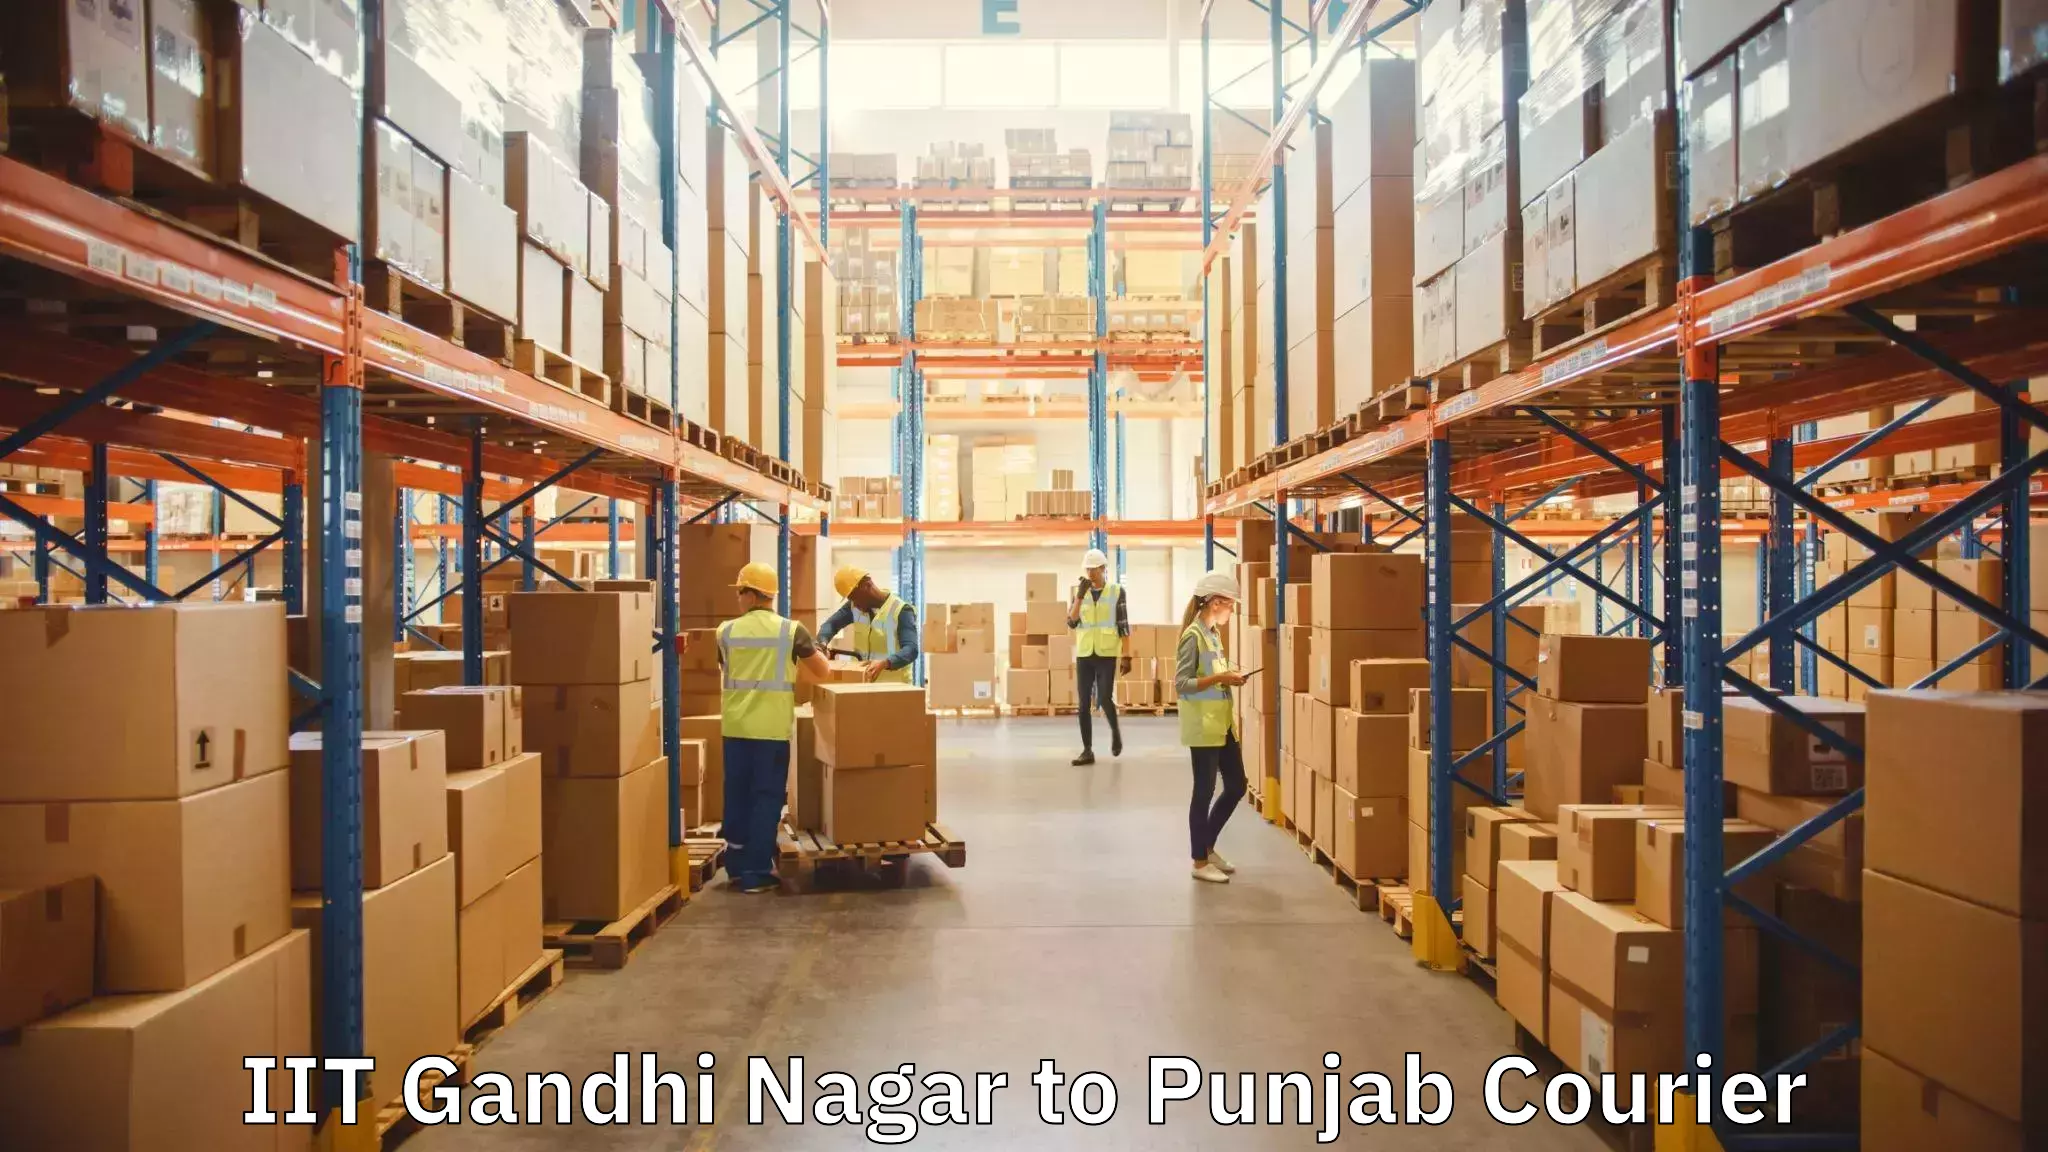 Custom furniture transport IIT Gandhi Nagar to Punjab